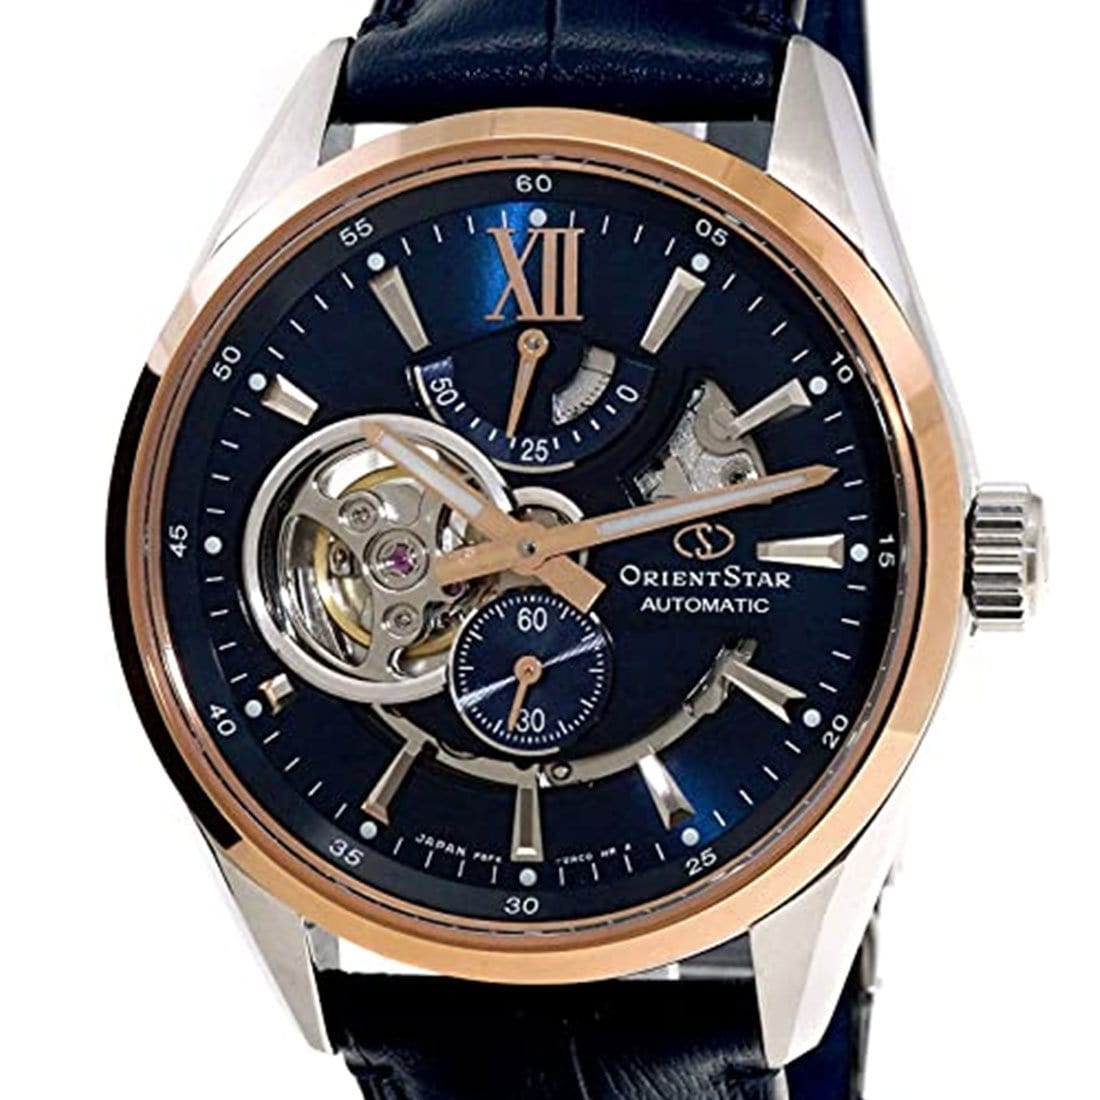 RE-AV0111L RE-AV0111L00B Orient Star Automatic 100M Leather Male Watch